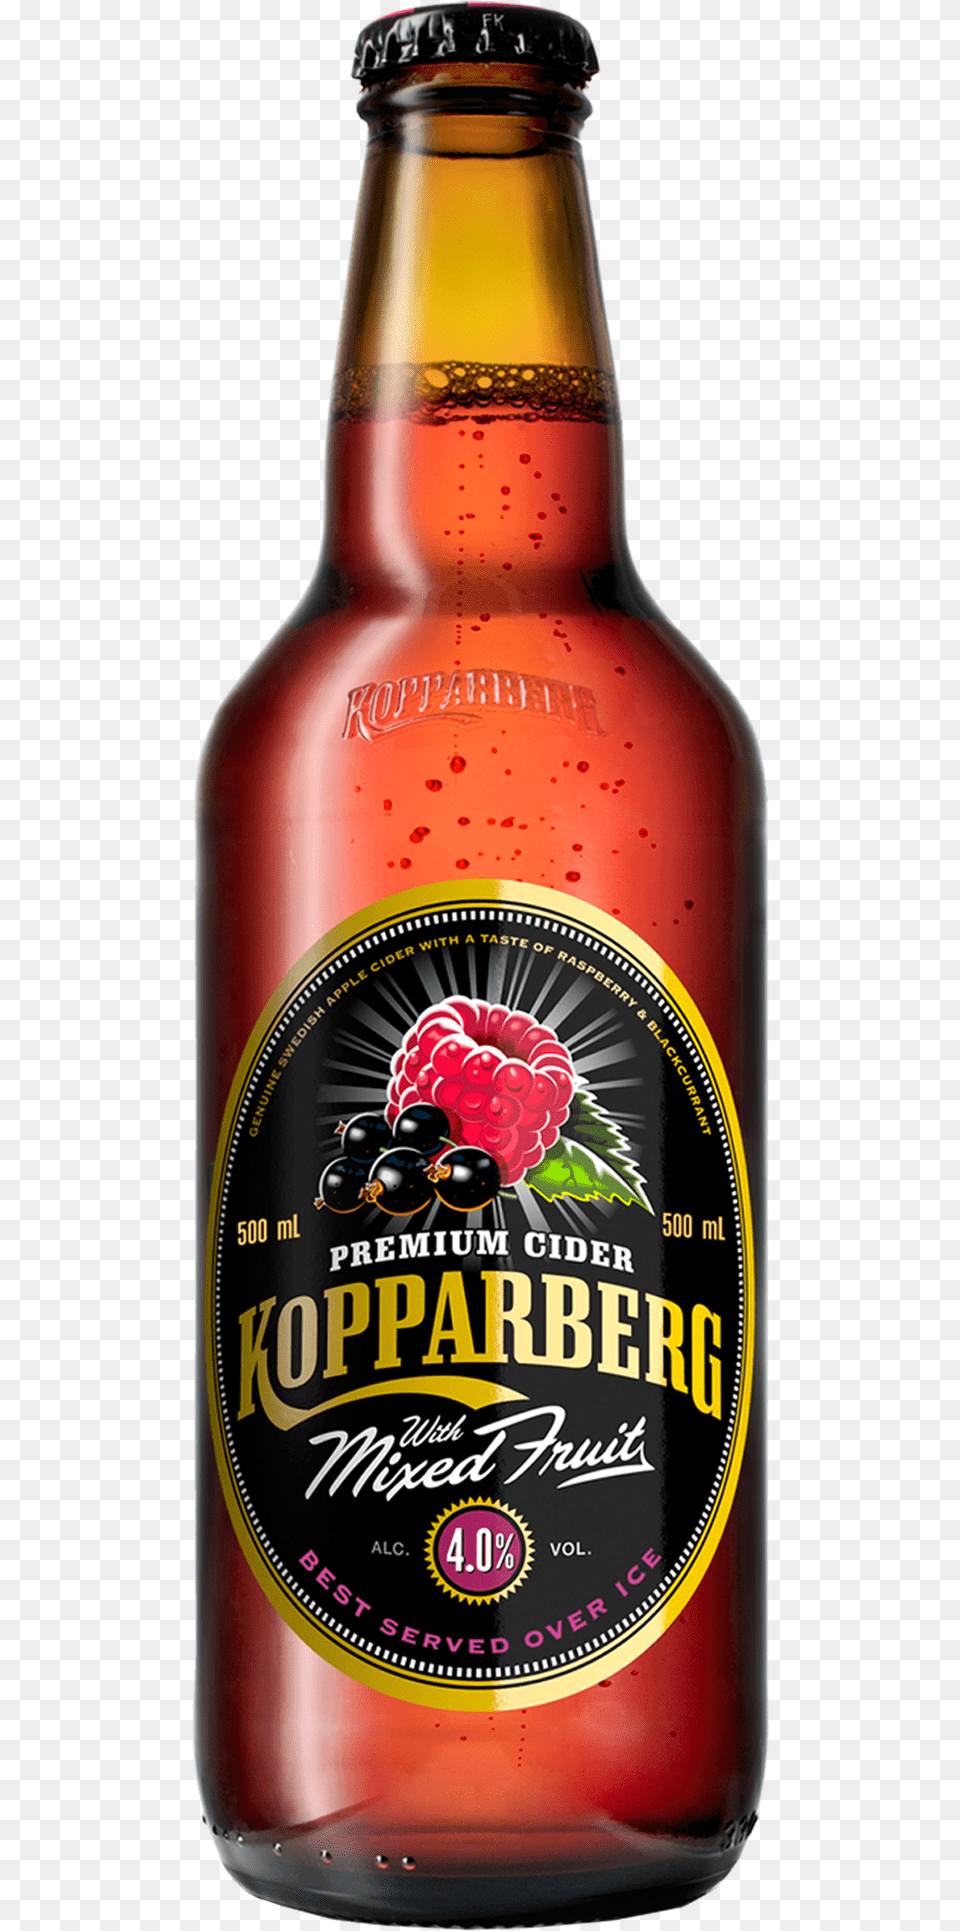 Kopparberg Mixed Fruit Cider 500ml Kopparberg Cider, Alcohol, Beer, Beer Bottle, Beverage Free Transparent Png